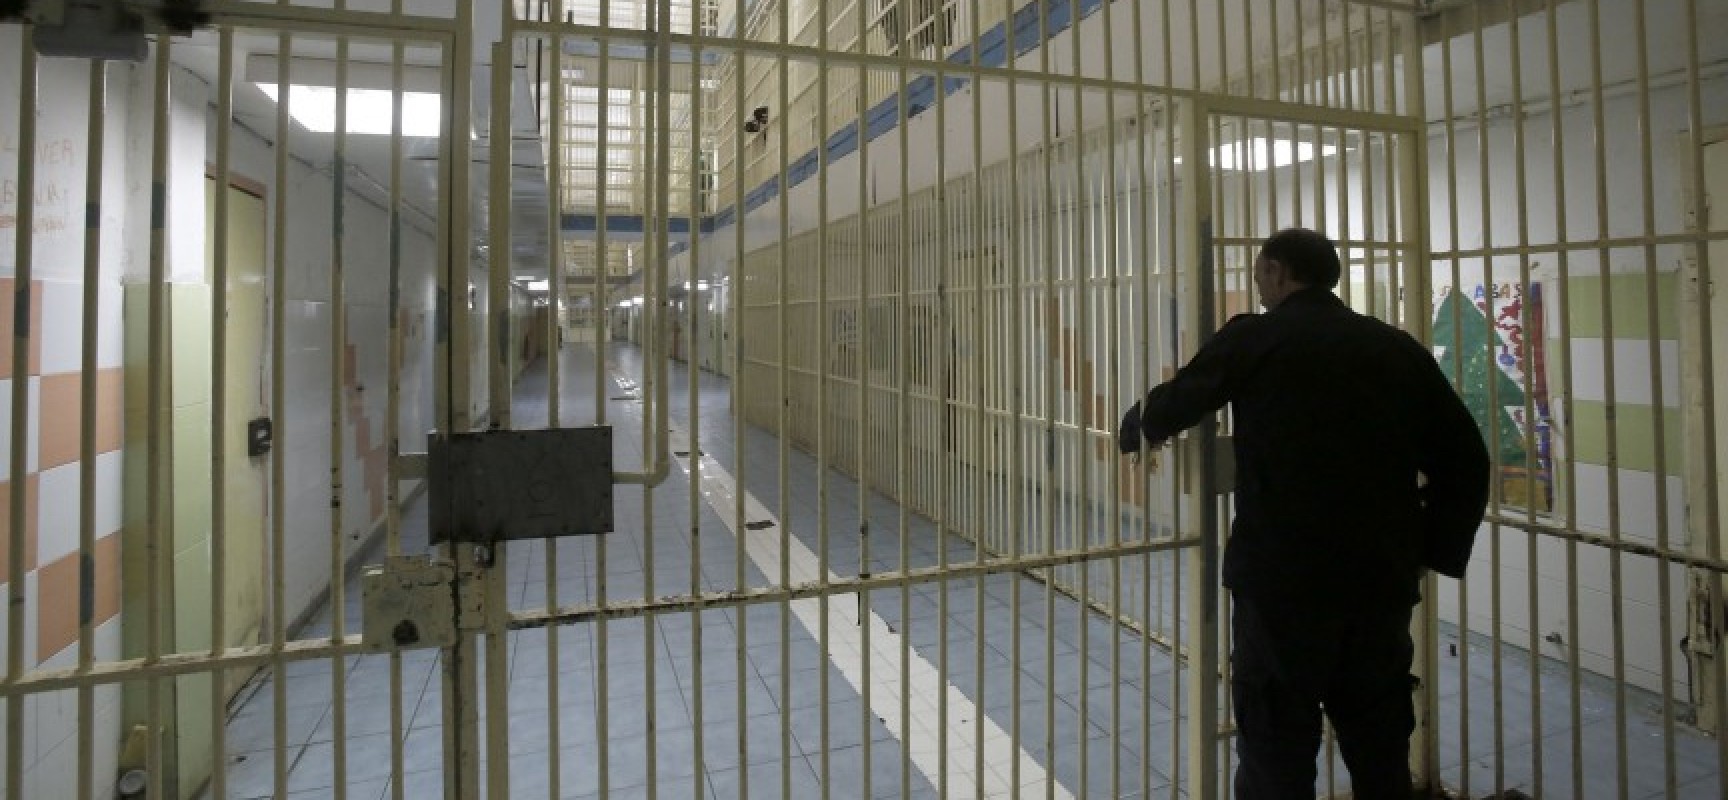 Προσπάθησε να αποδράσει από τις φυλακές κόβοντας τα κάγκελα του κελιού του